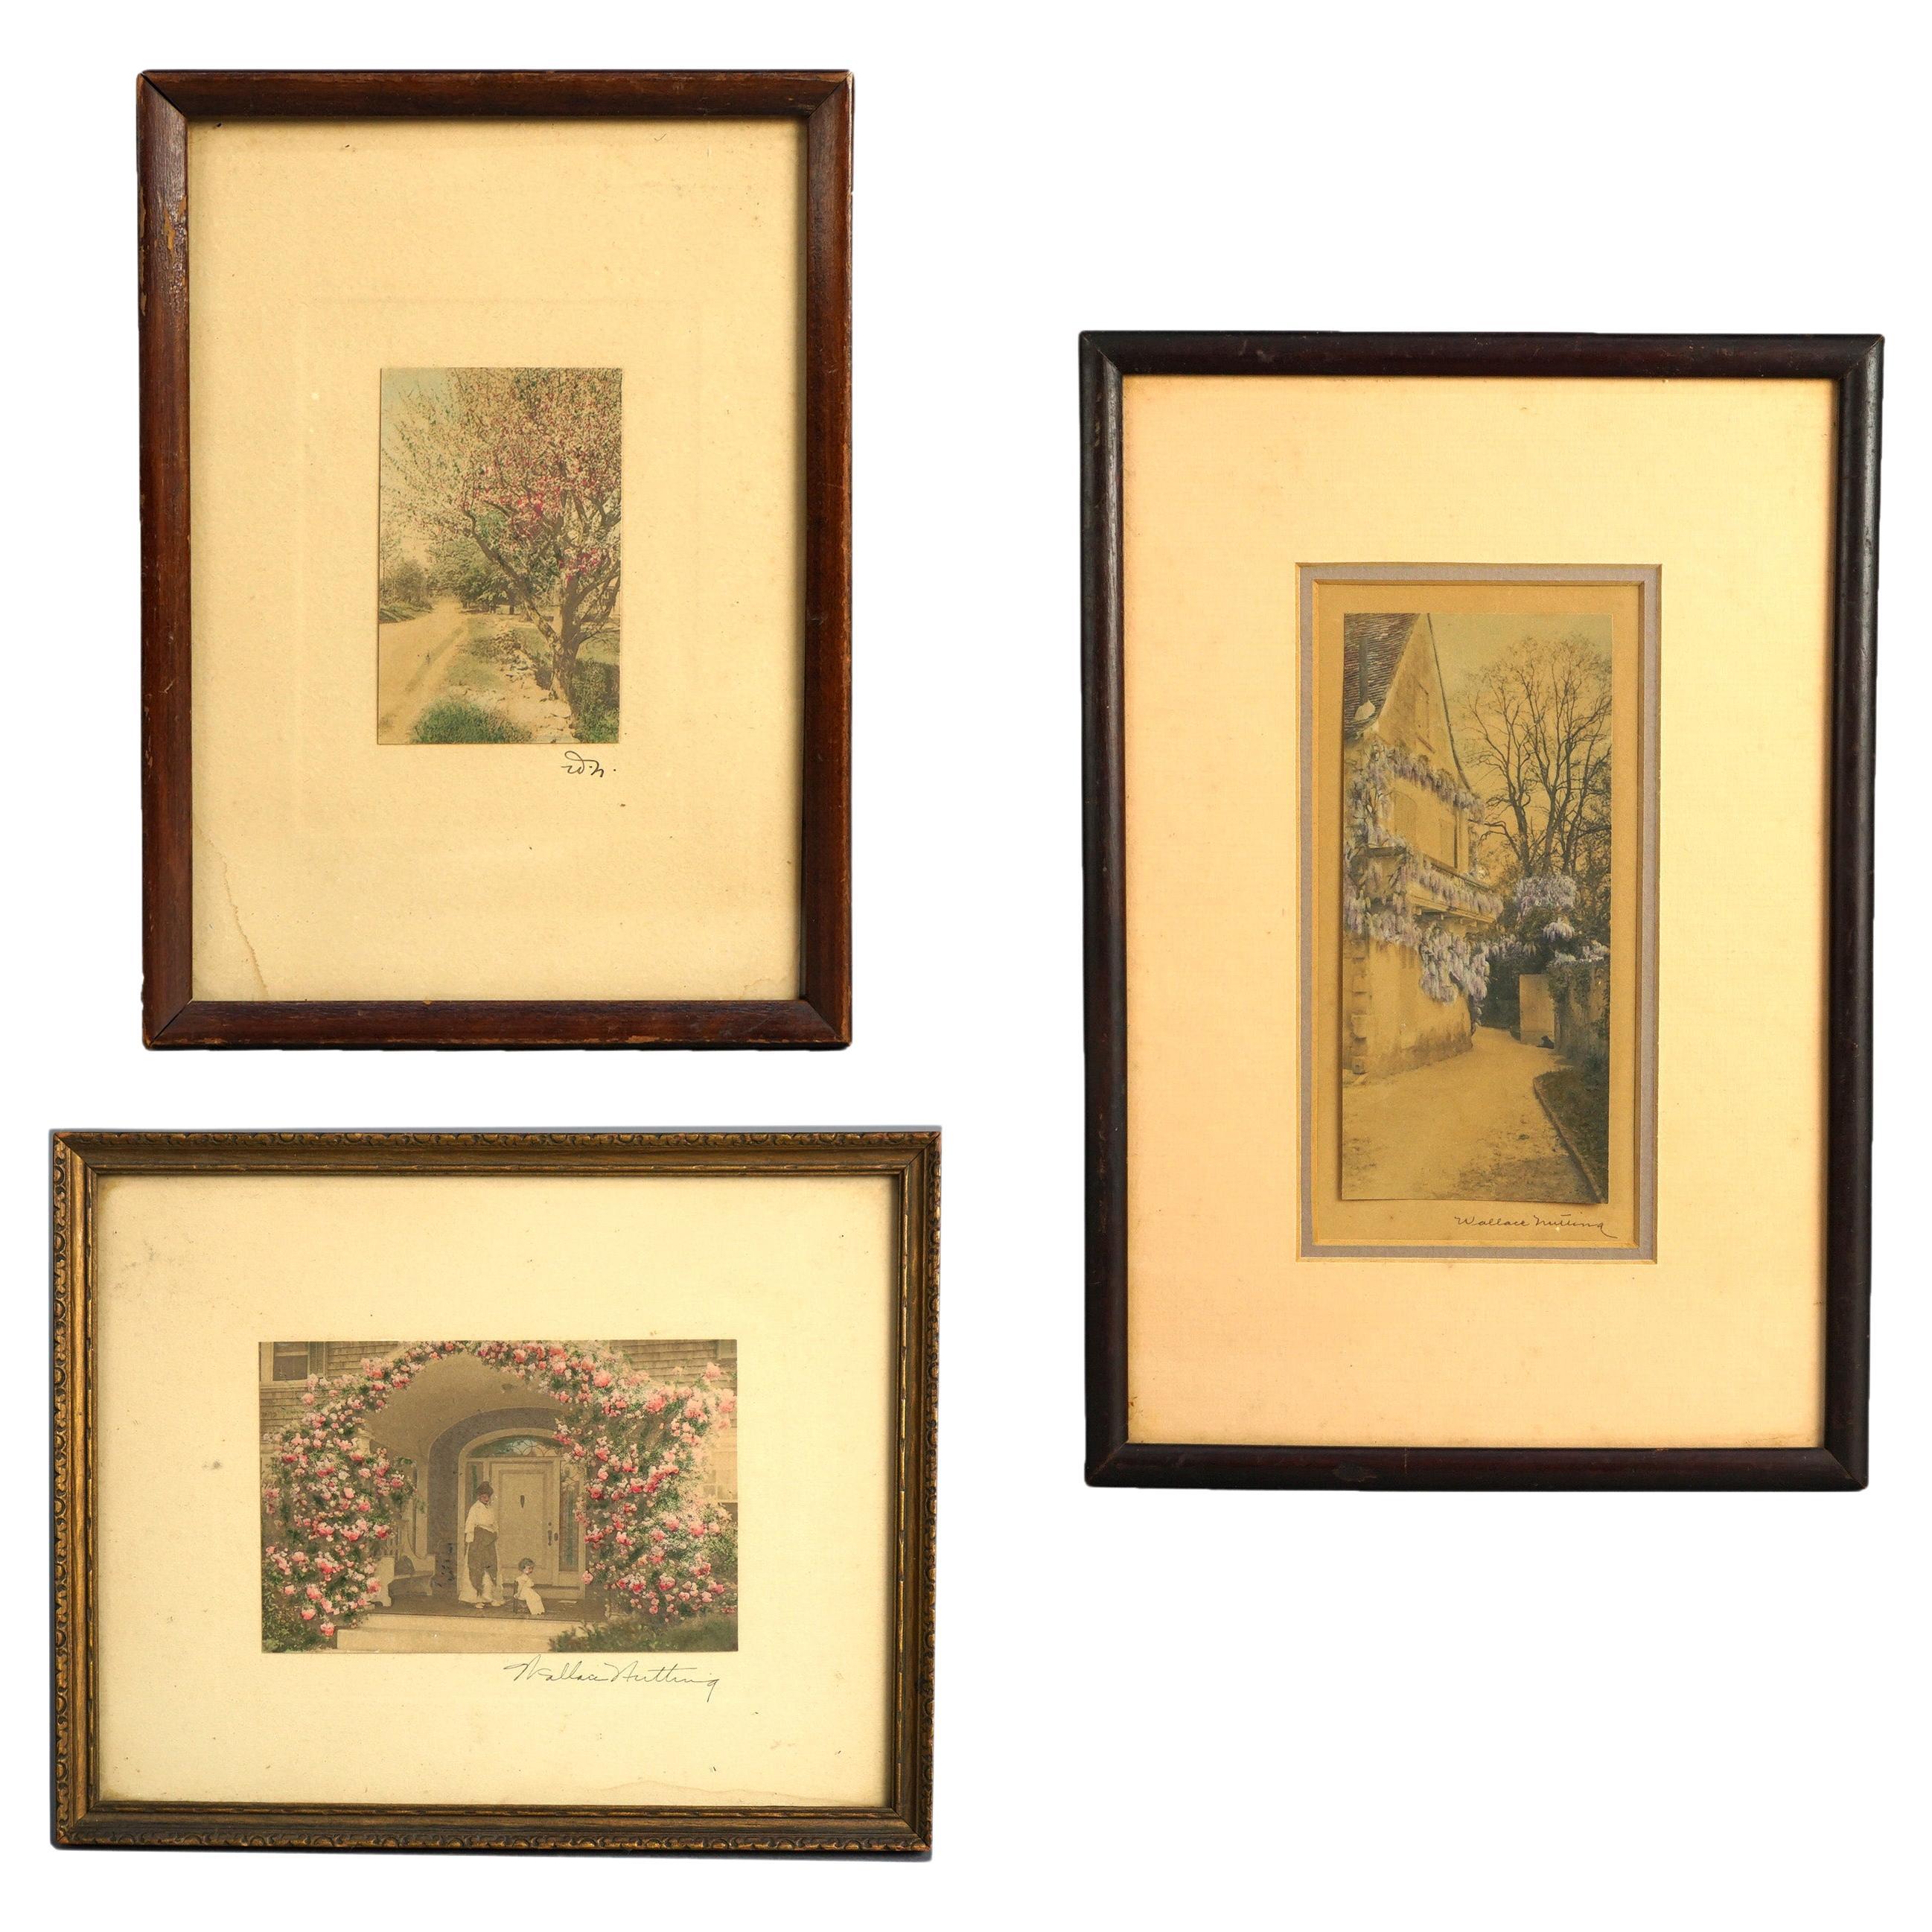 Drei antike Wallace Nutting Drucke einschließlich Interieur und Landschaftsszenen C1920